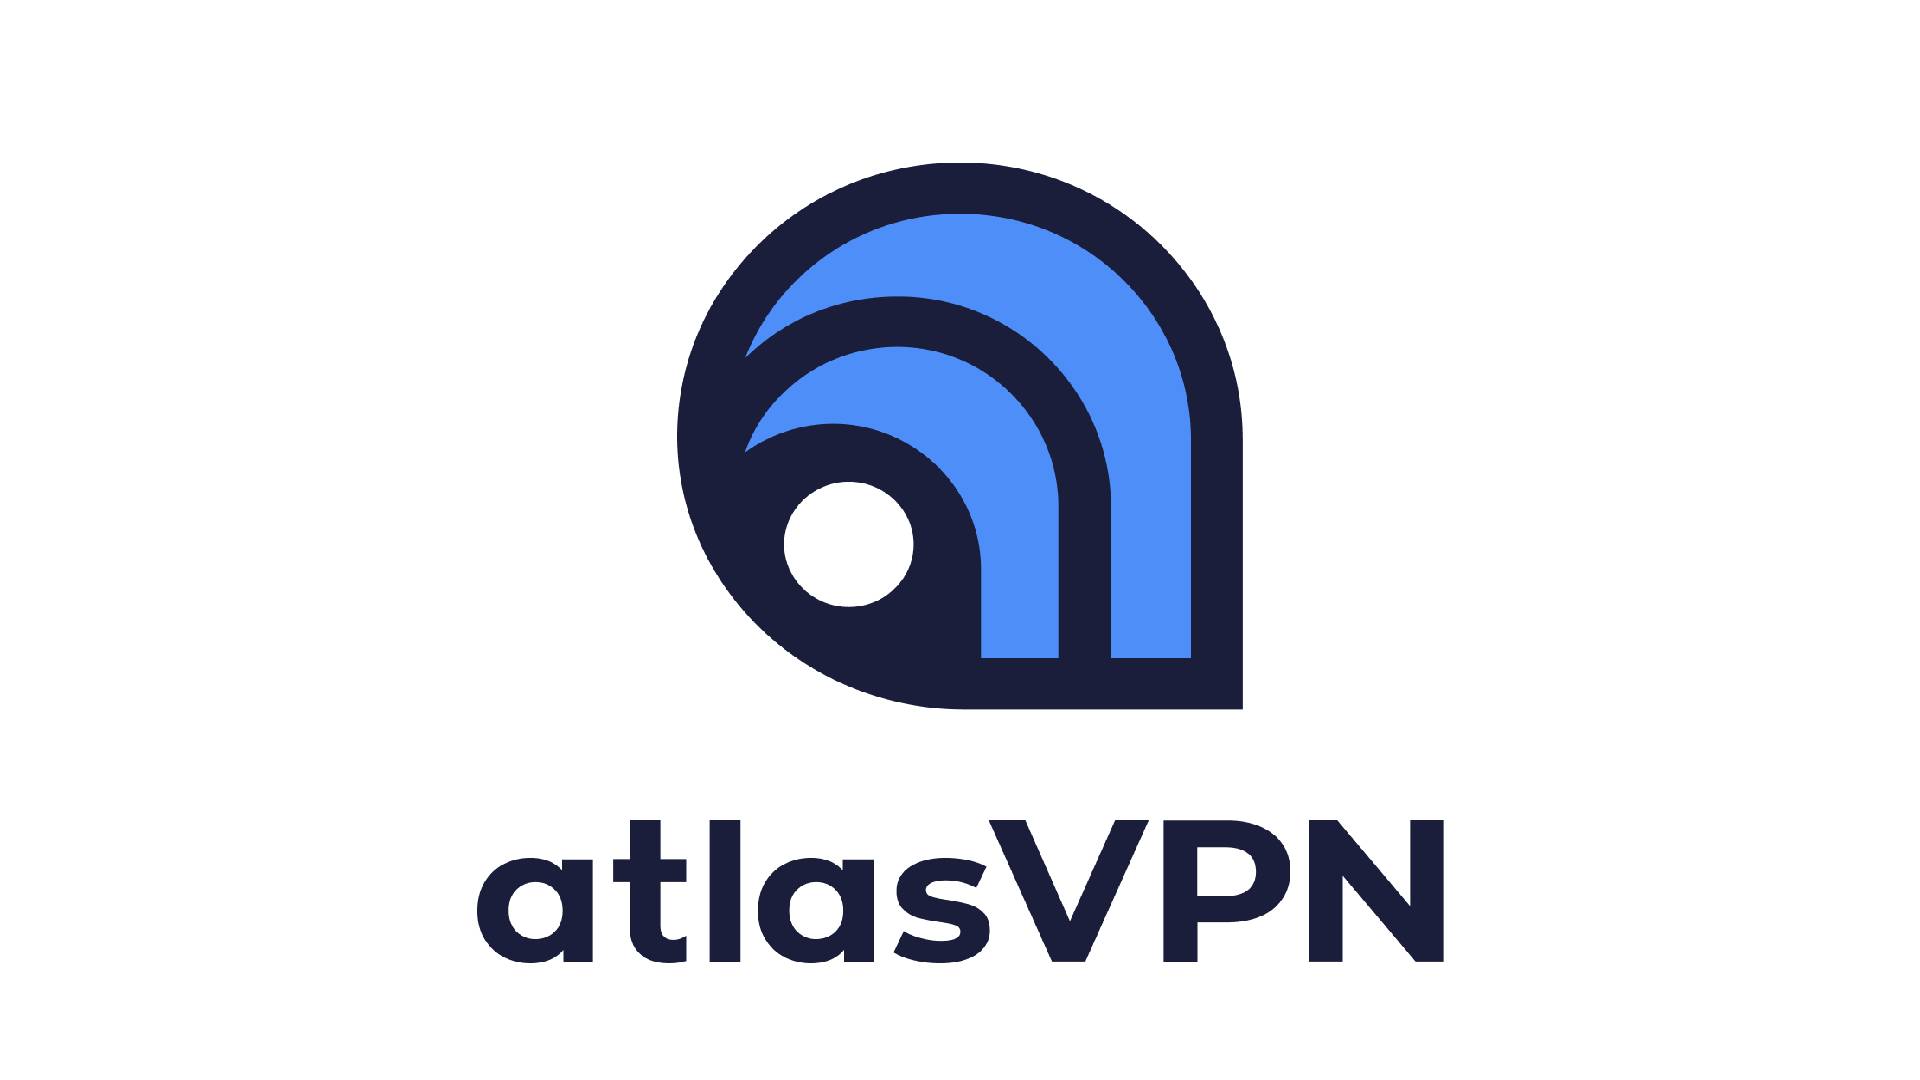 Best free VPN: AtlasVPN. Image shows the logo of AtlasVPN.